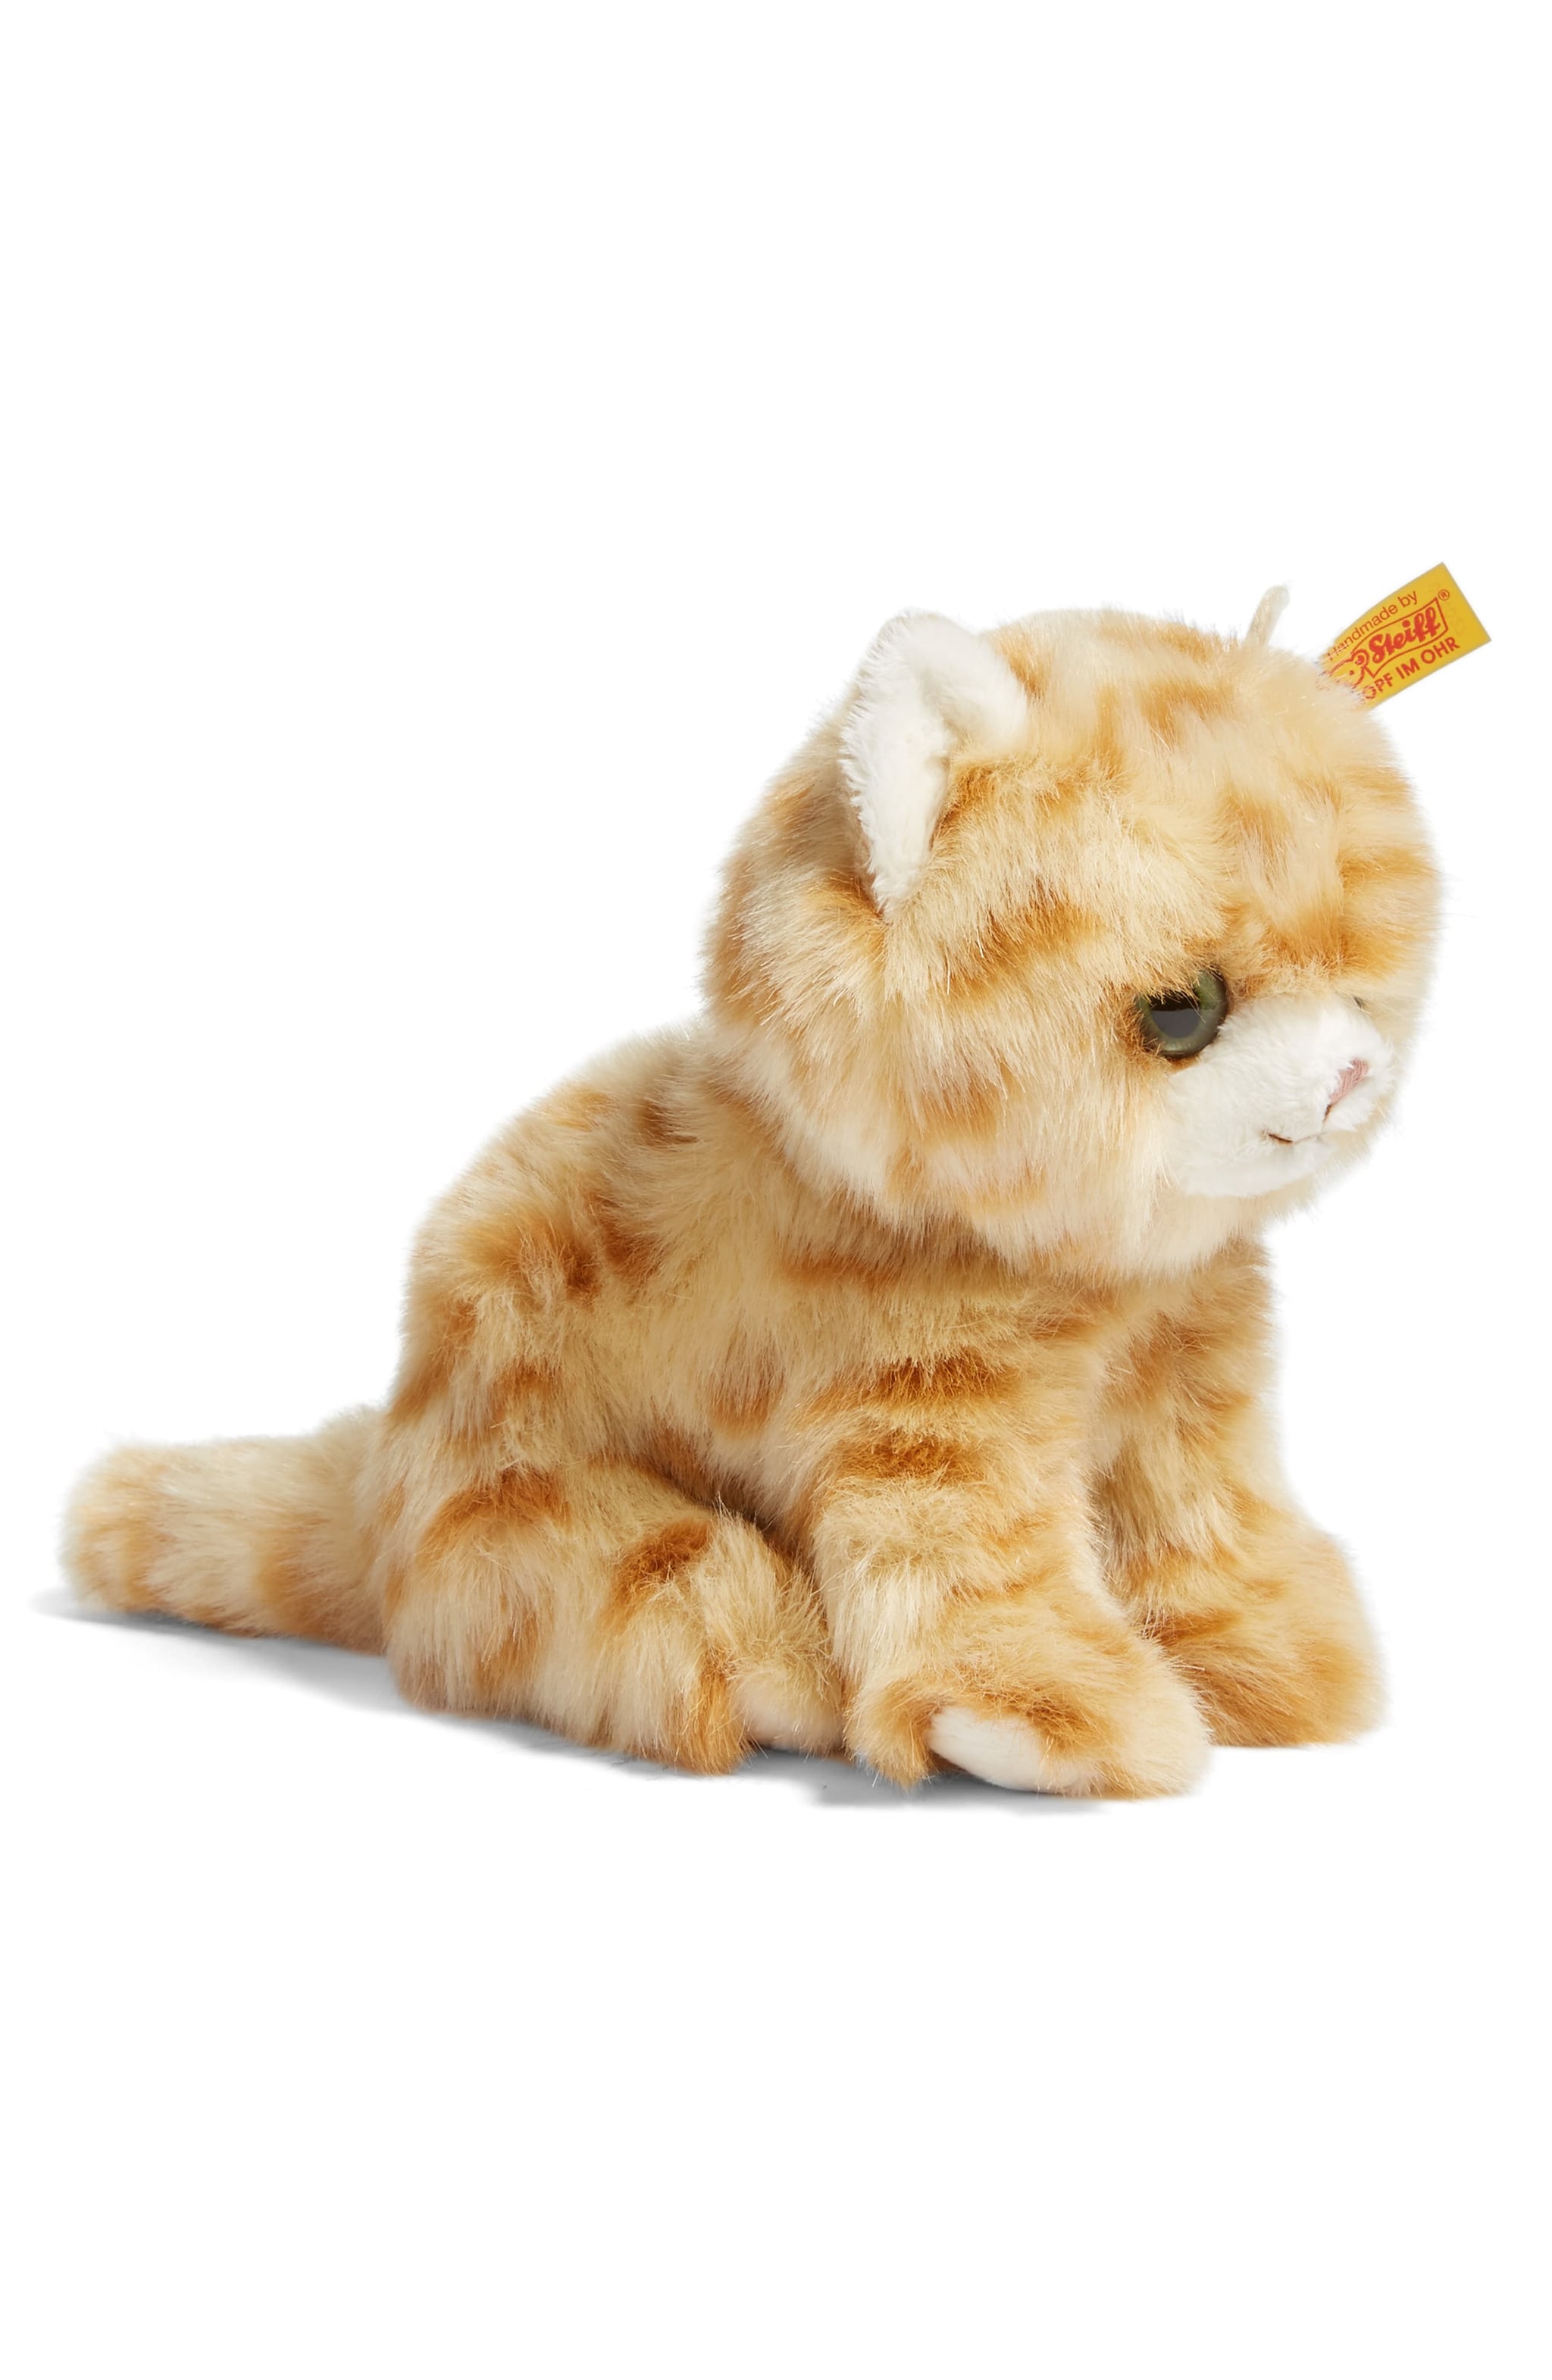 kitten stuffed toy